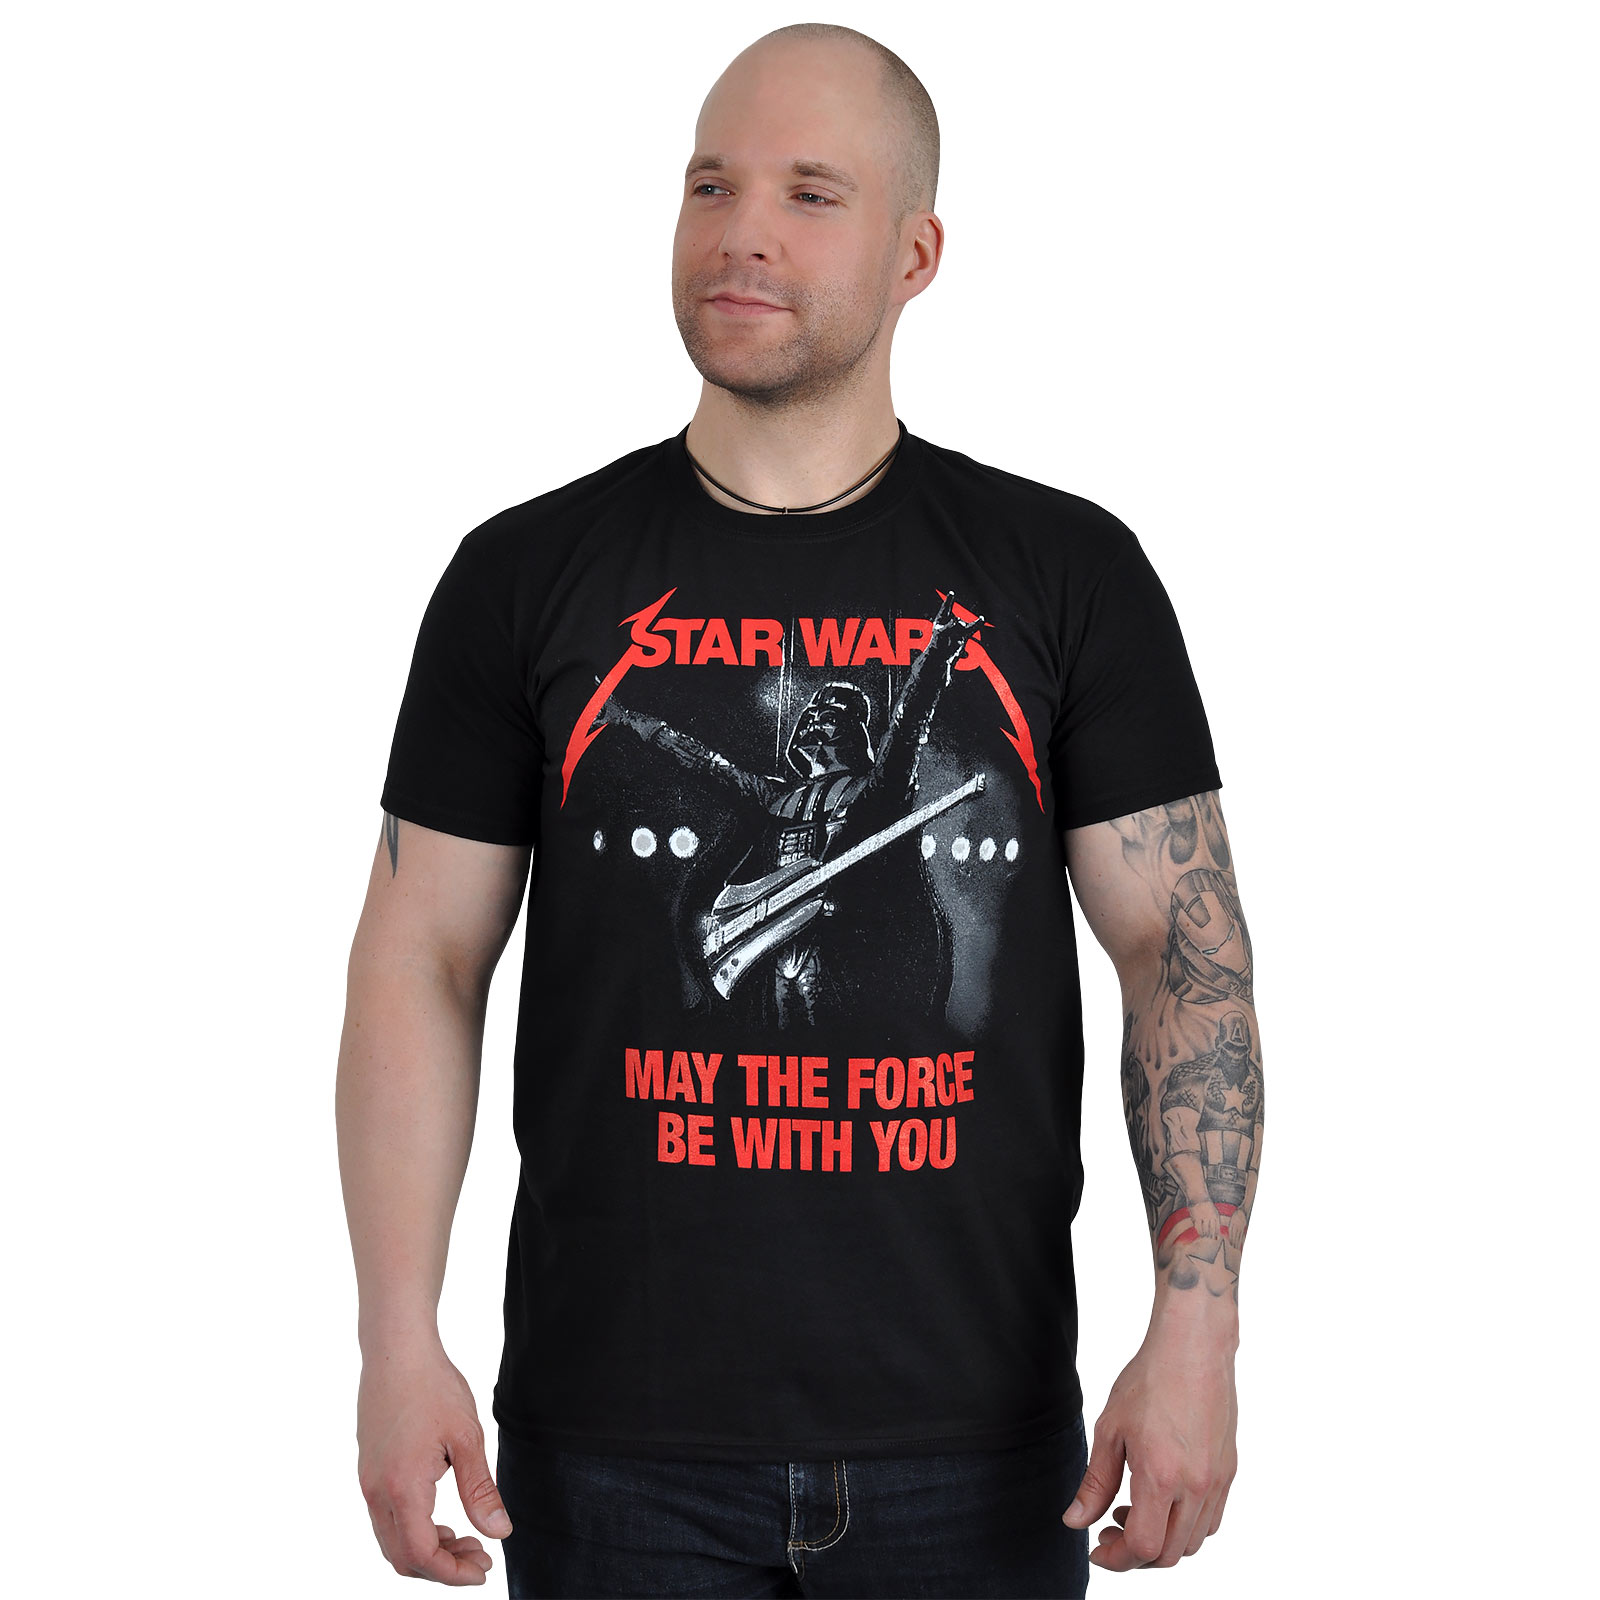 Star Wars - Metal Wars T-Shirt